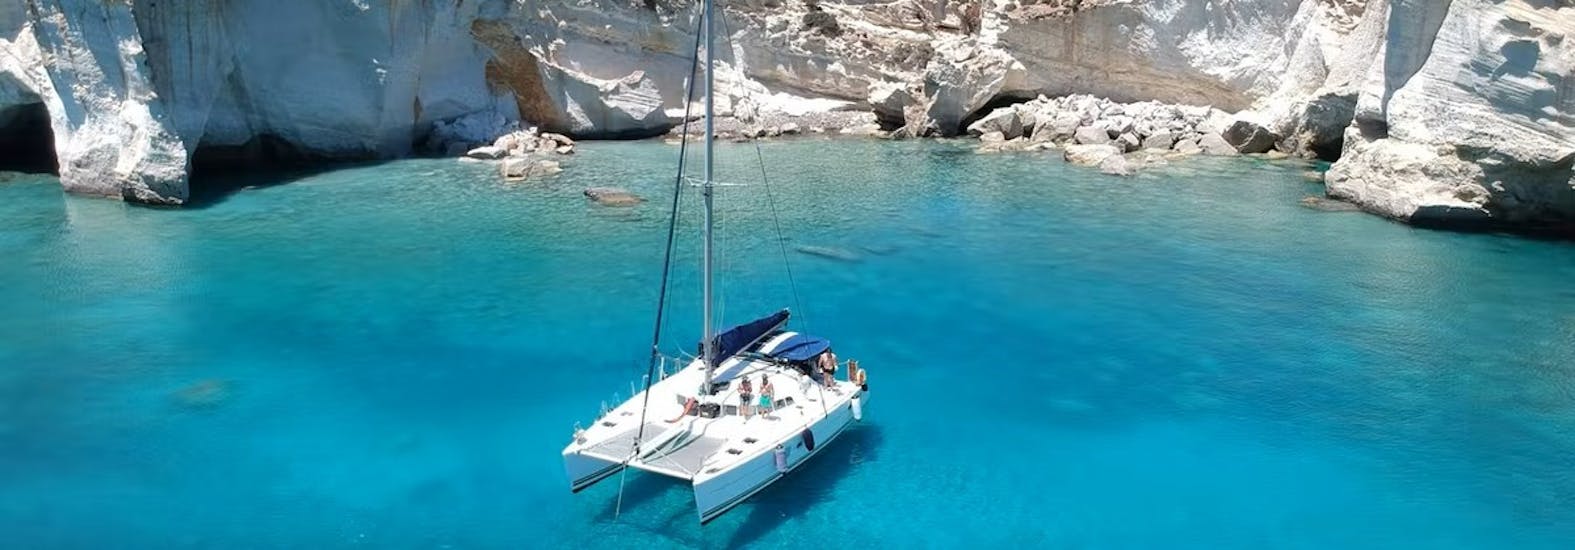 Bild des Katamarans im kristallklaren Wasser während der Katamarantour um Milos & Polyaigos mit Mittagessen mit Polco Sailing Milos.